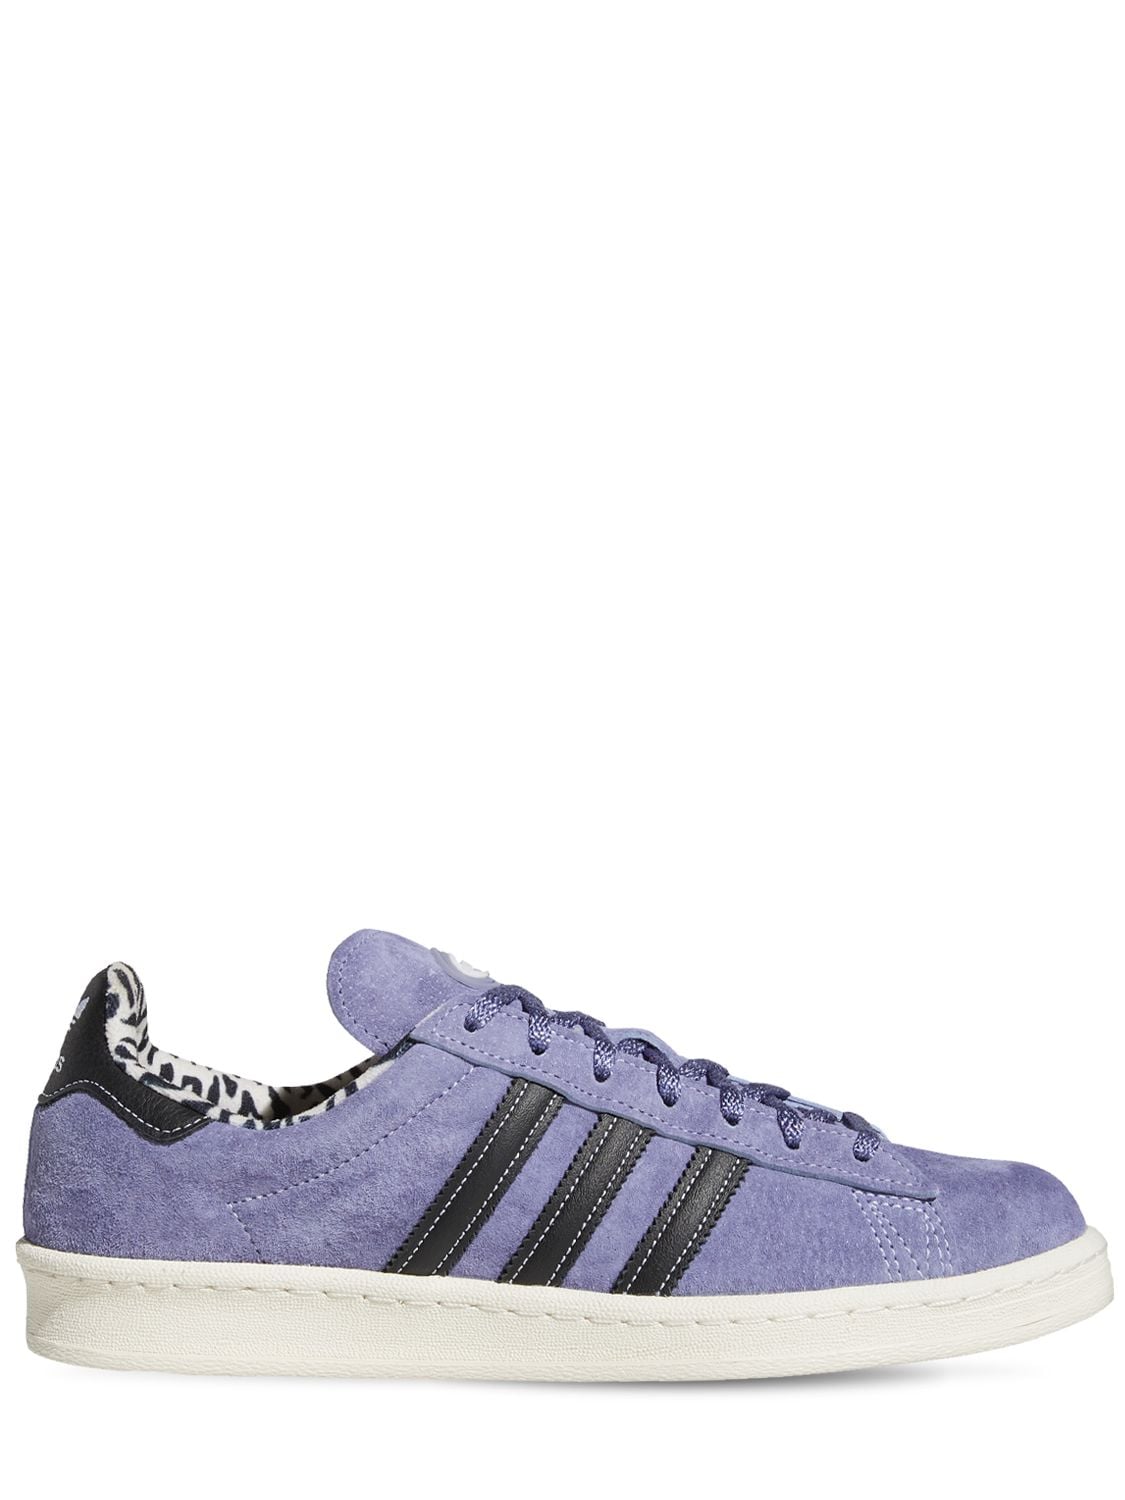 Popa Planeta espíritu Adidas Originals X Xlarge Campus 80s Sneaker In Purple | ModeSens